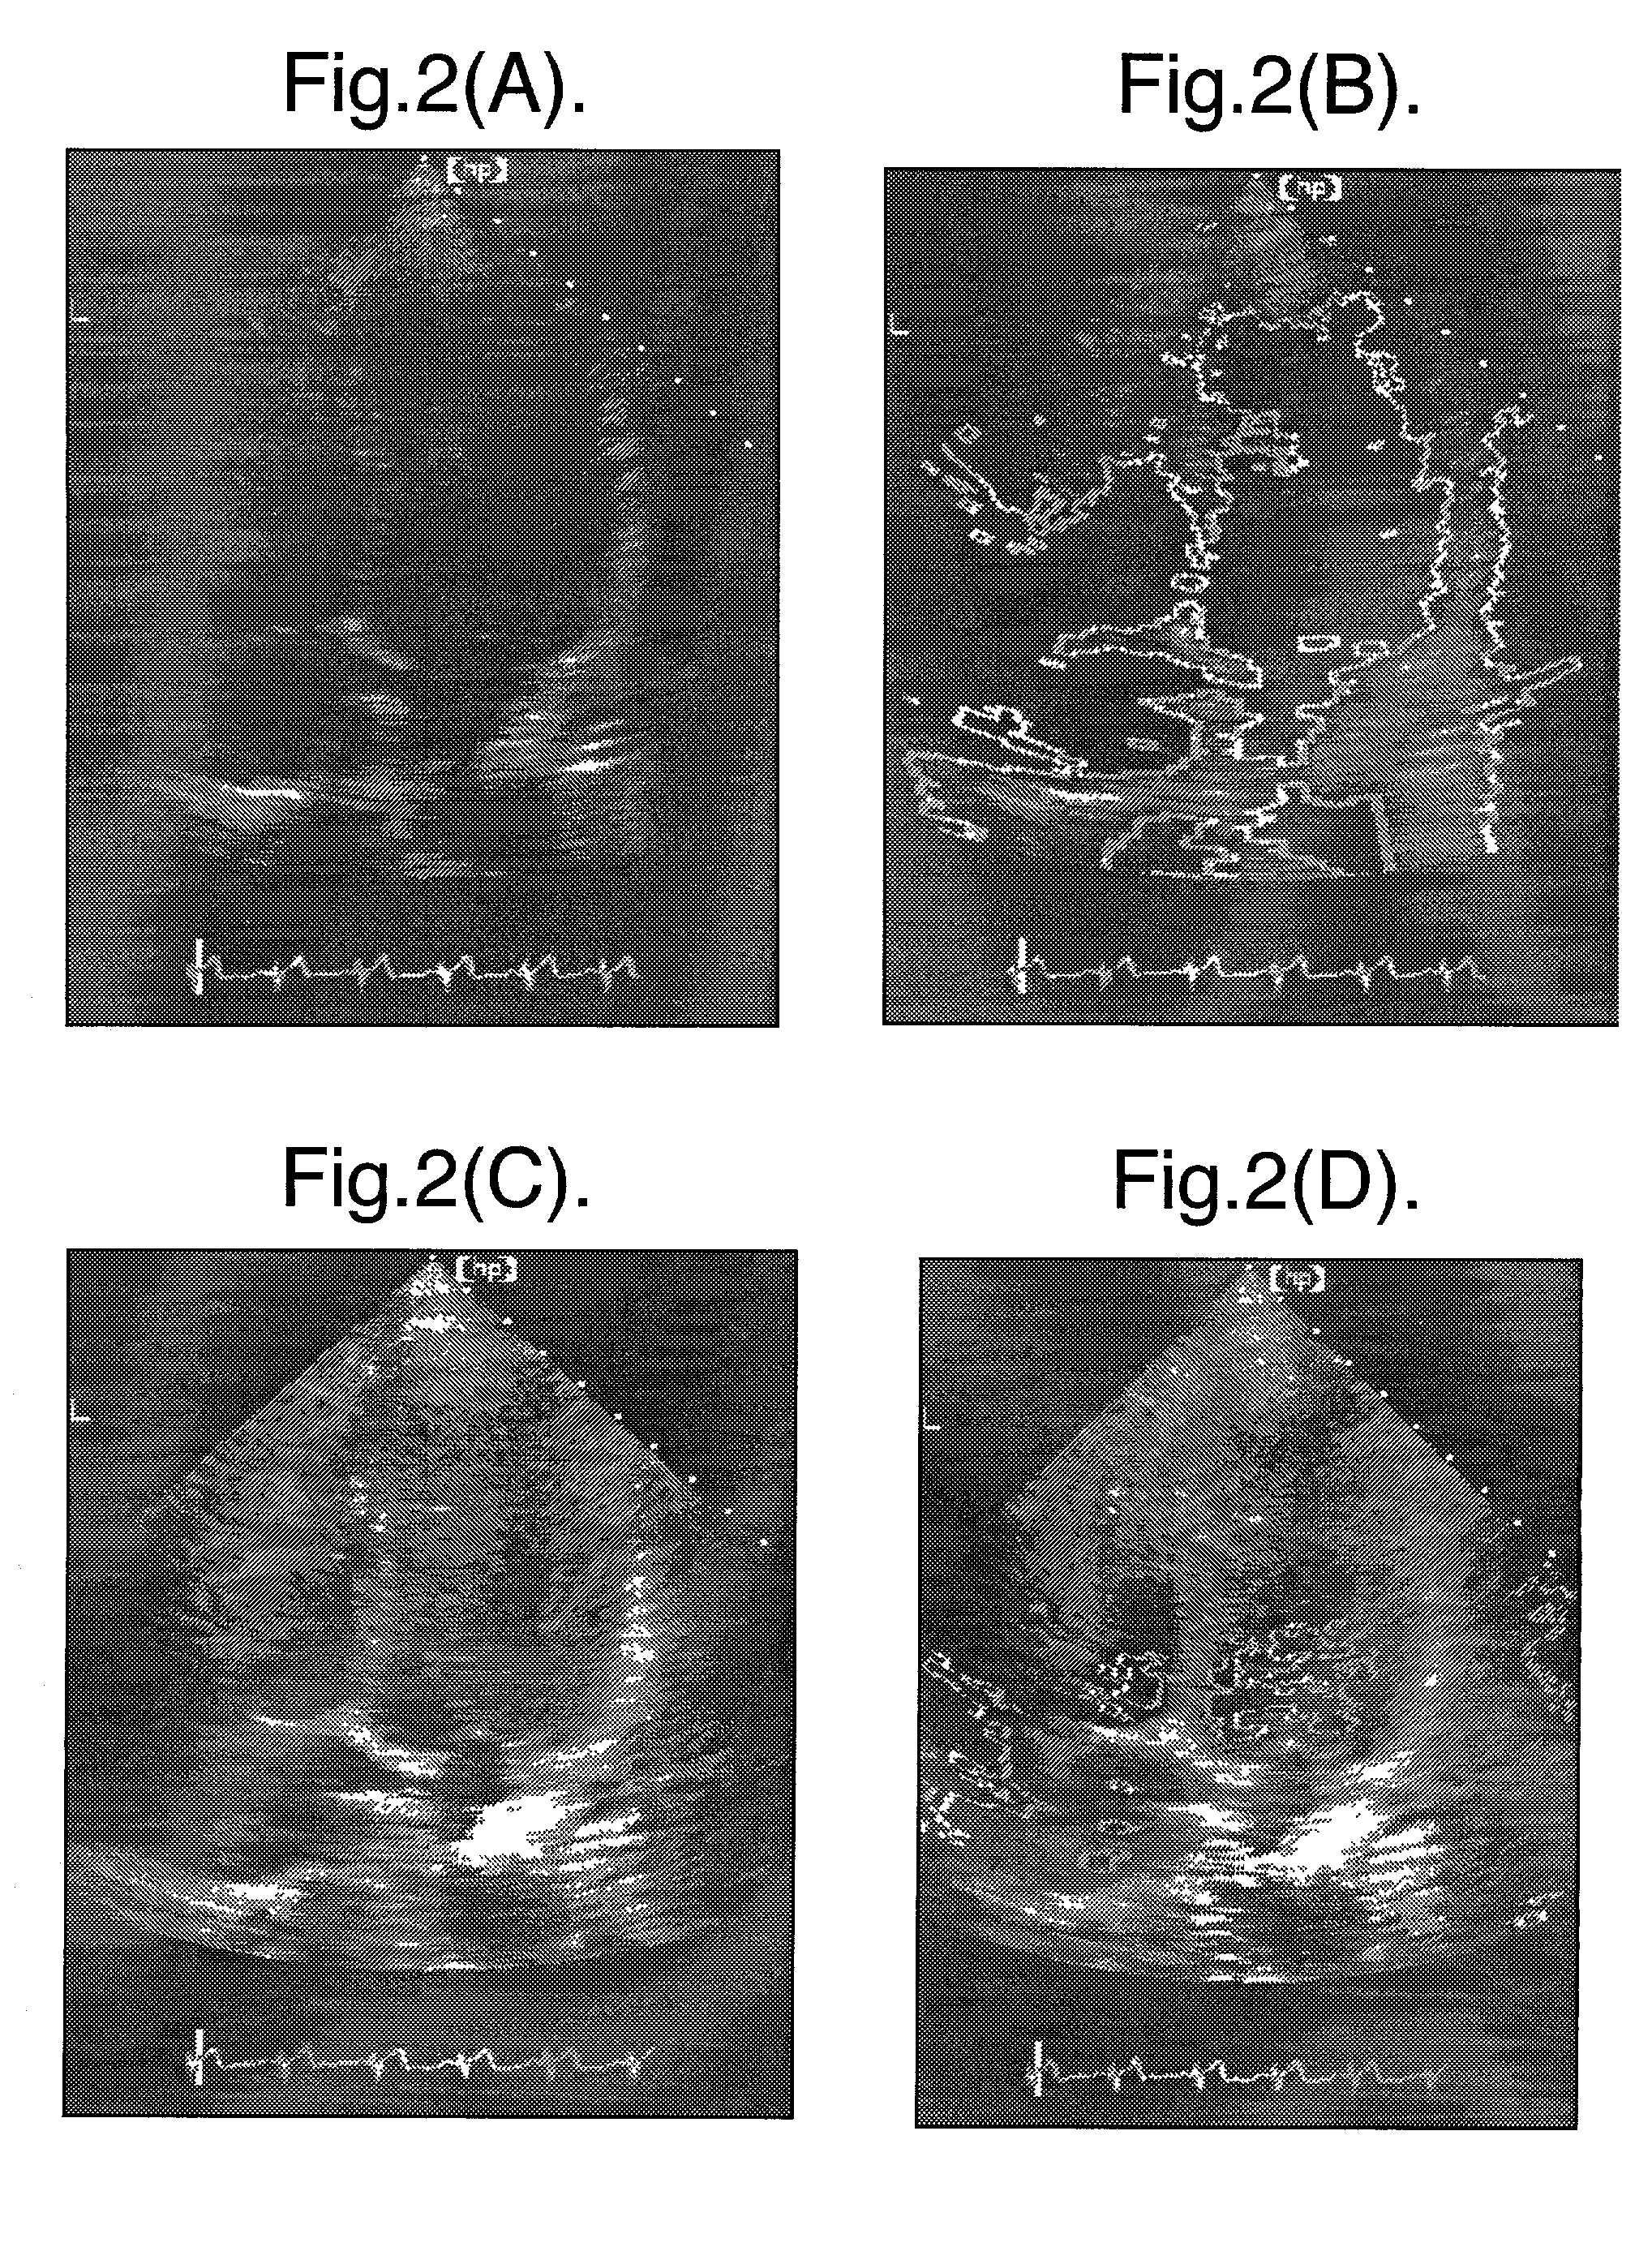 Non-rigid motion image analysis